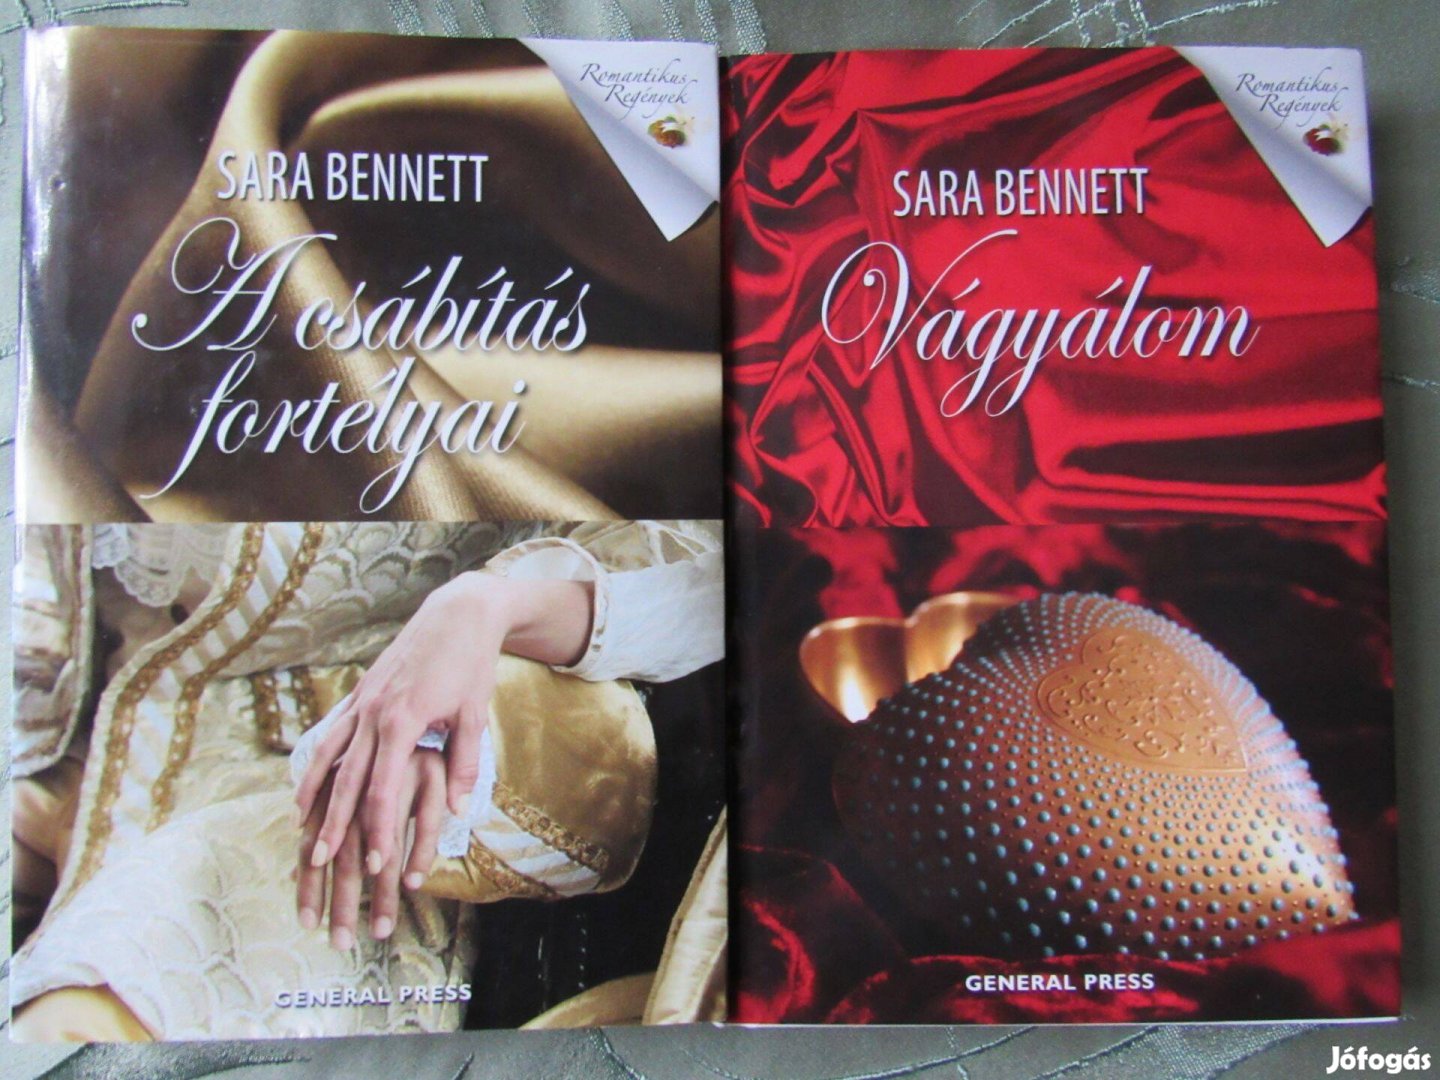 Sara Bennett könyvek csomagban, új állapotban eladók